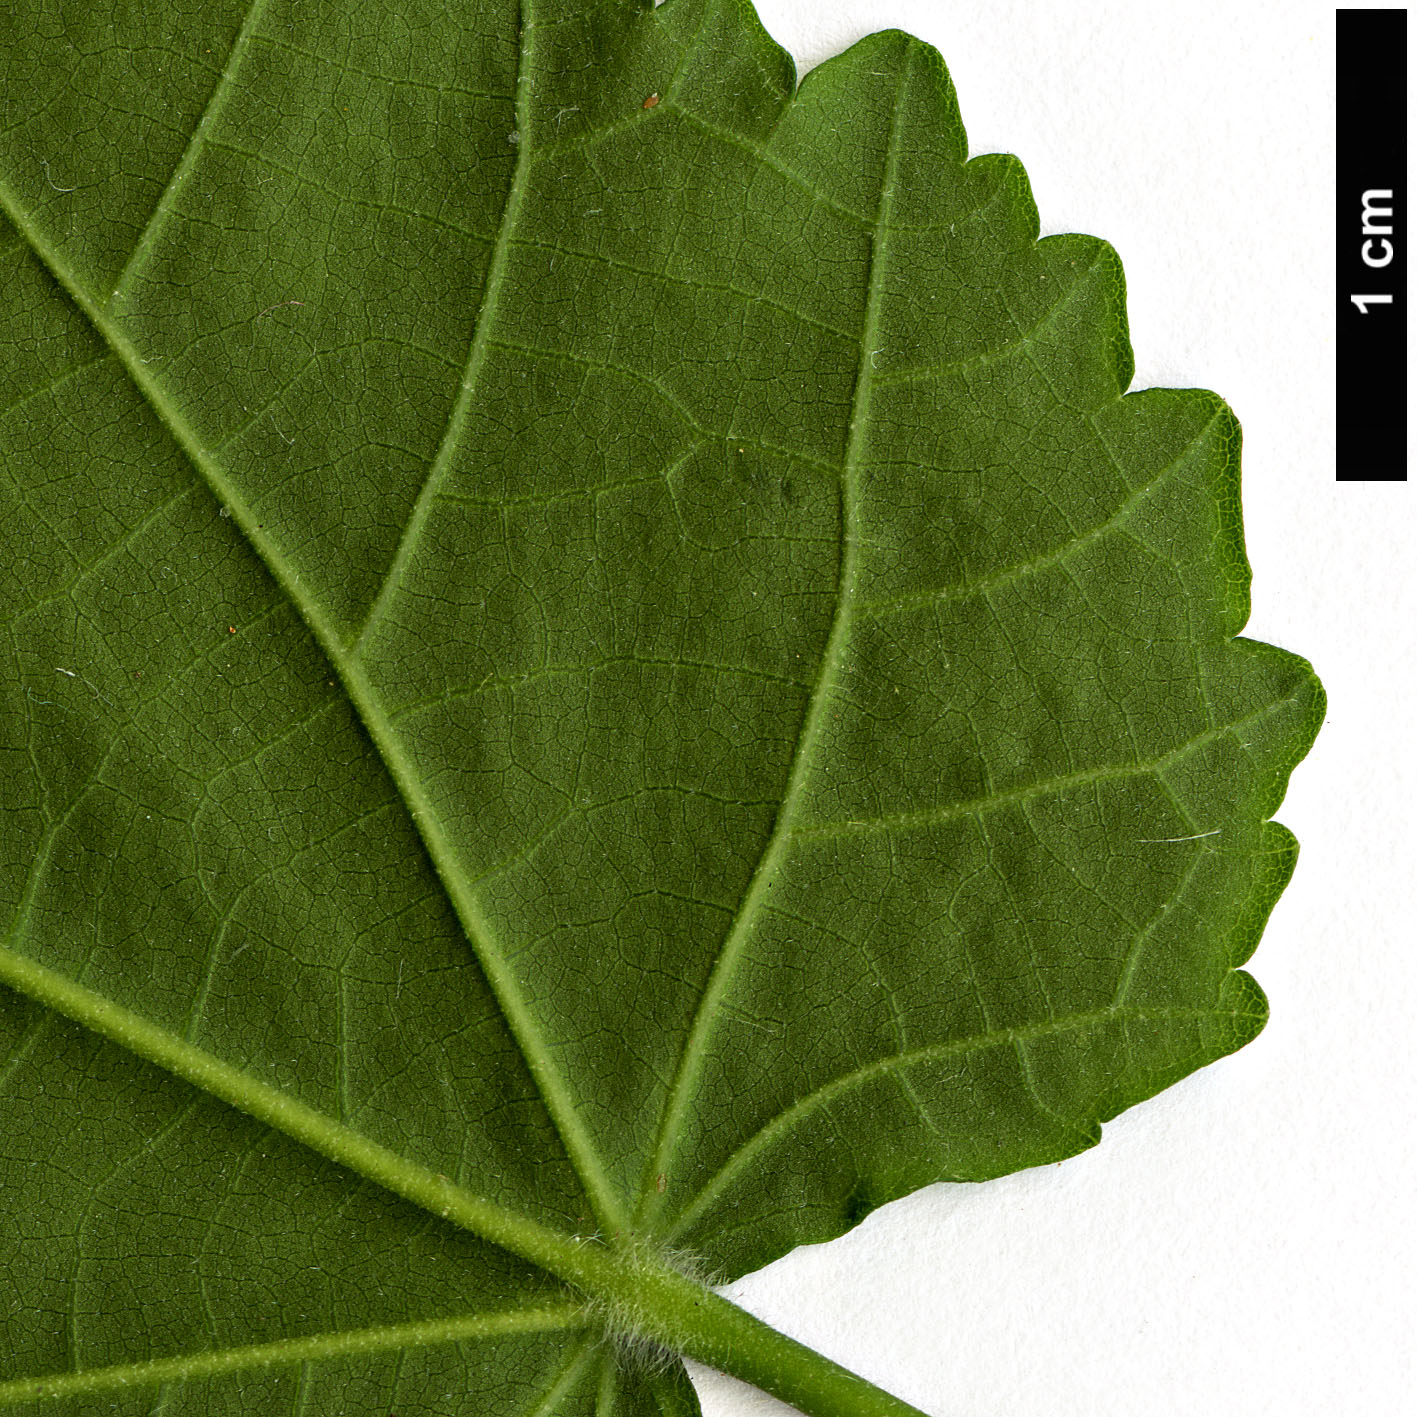 High resolution image: Family: Malvaceae - Genus: Abutilon - Taxon: megapotamicum